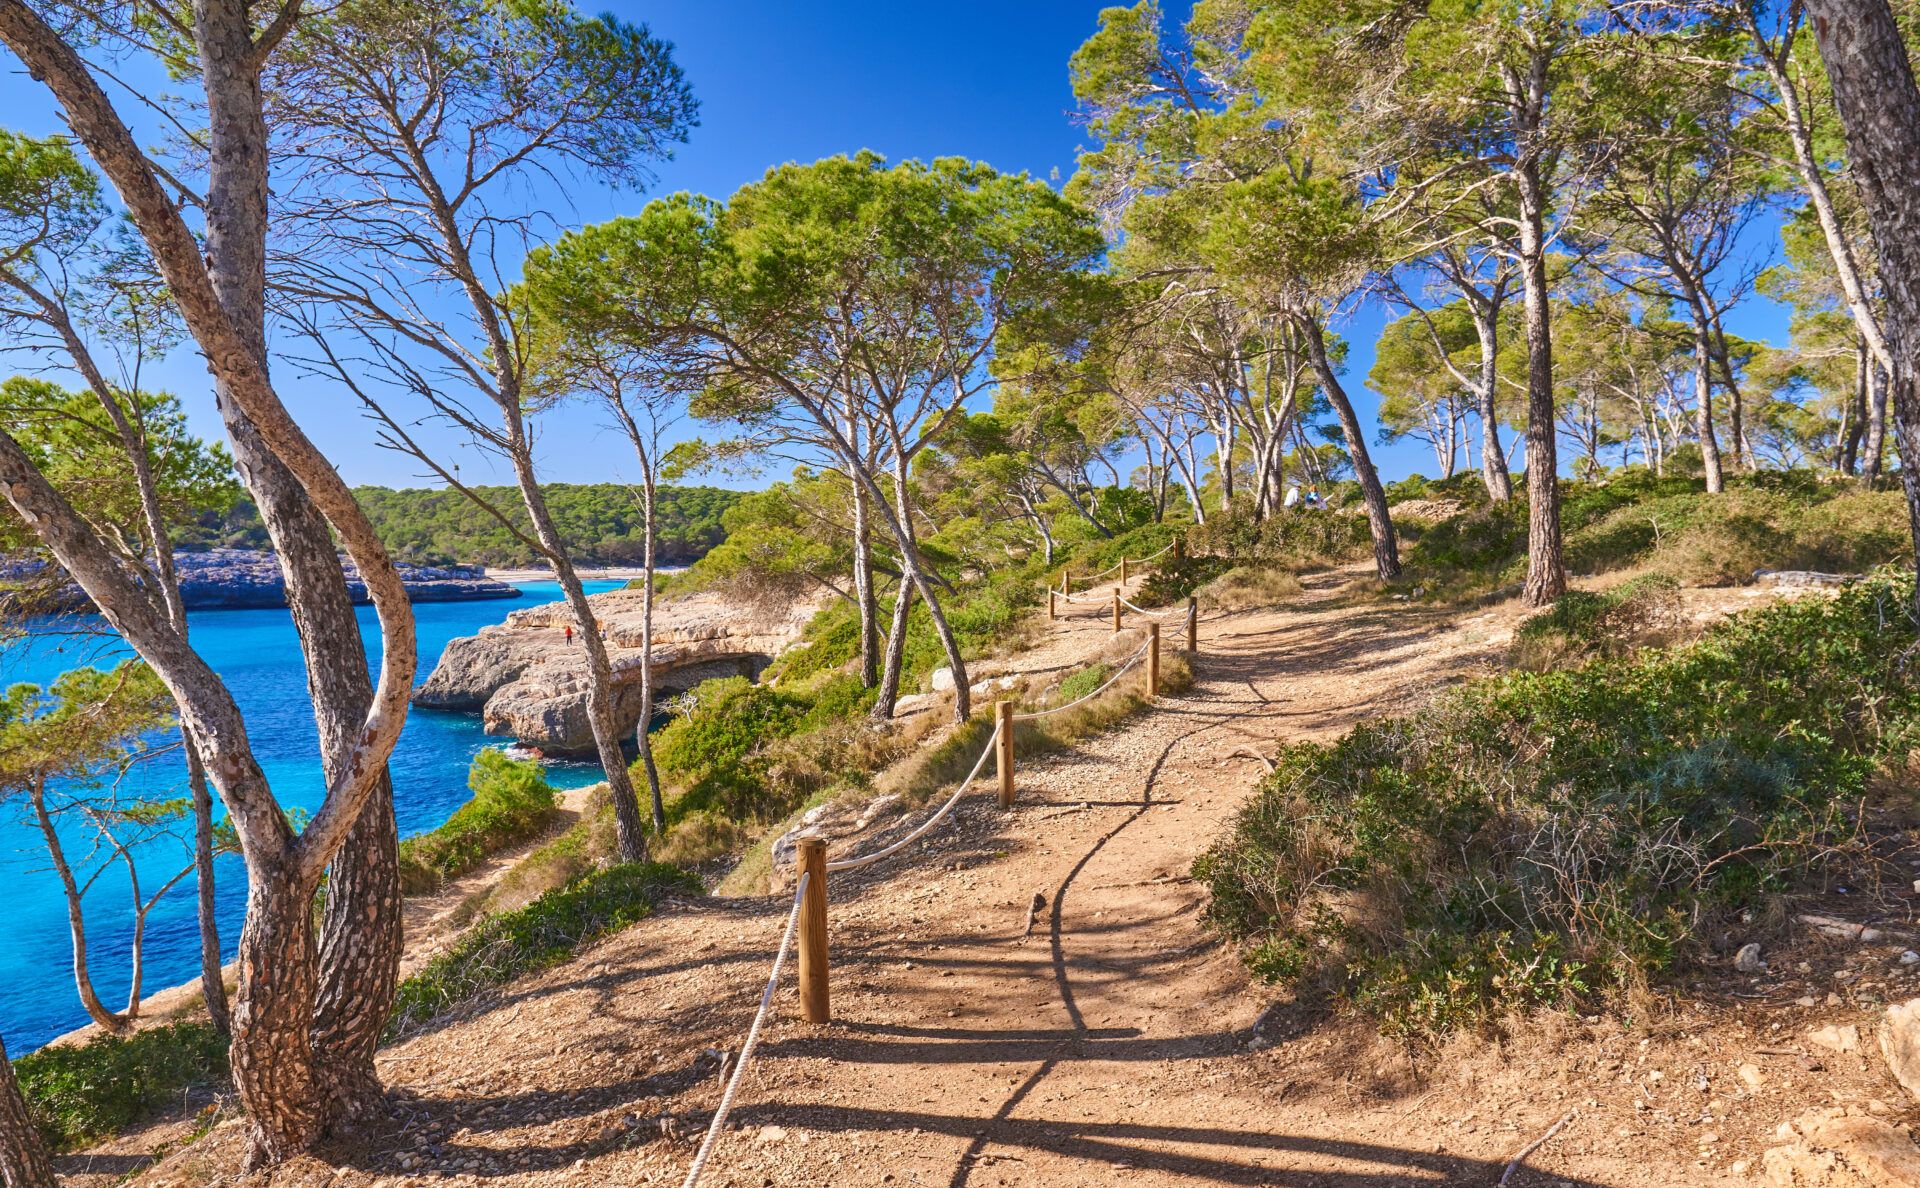 Parc Natural de Mondragó, Mallorca